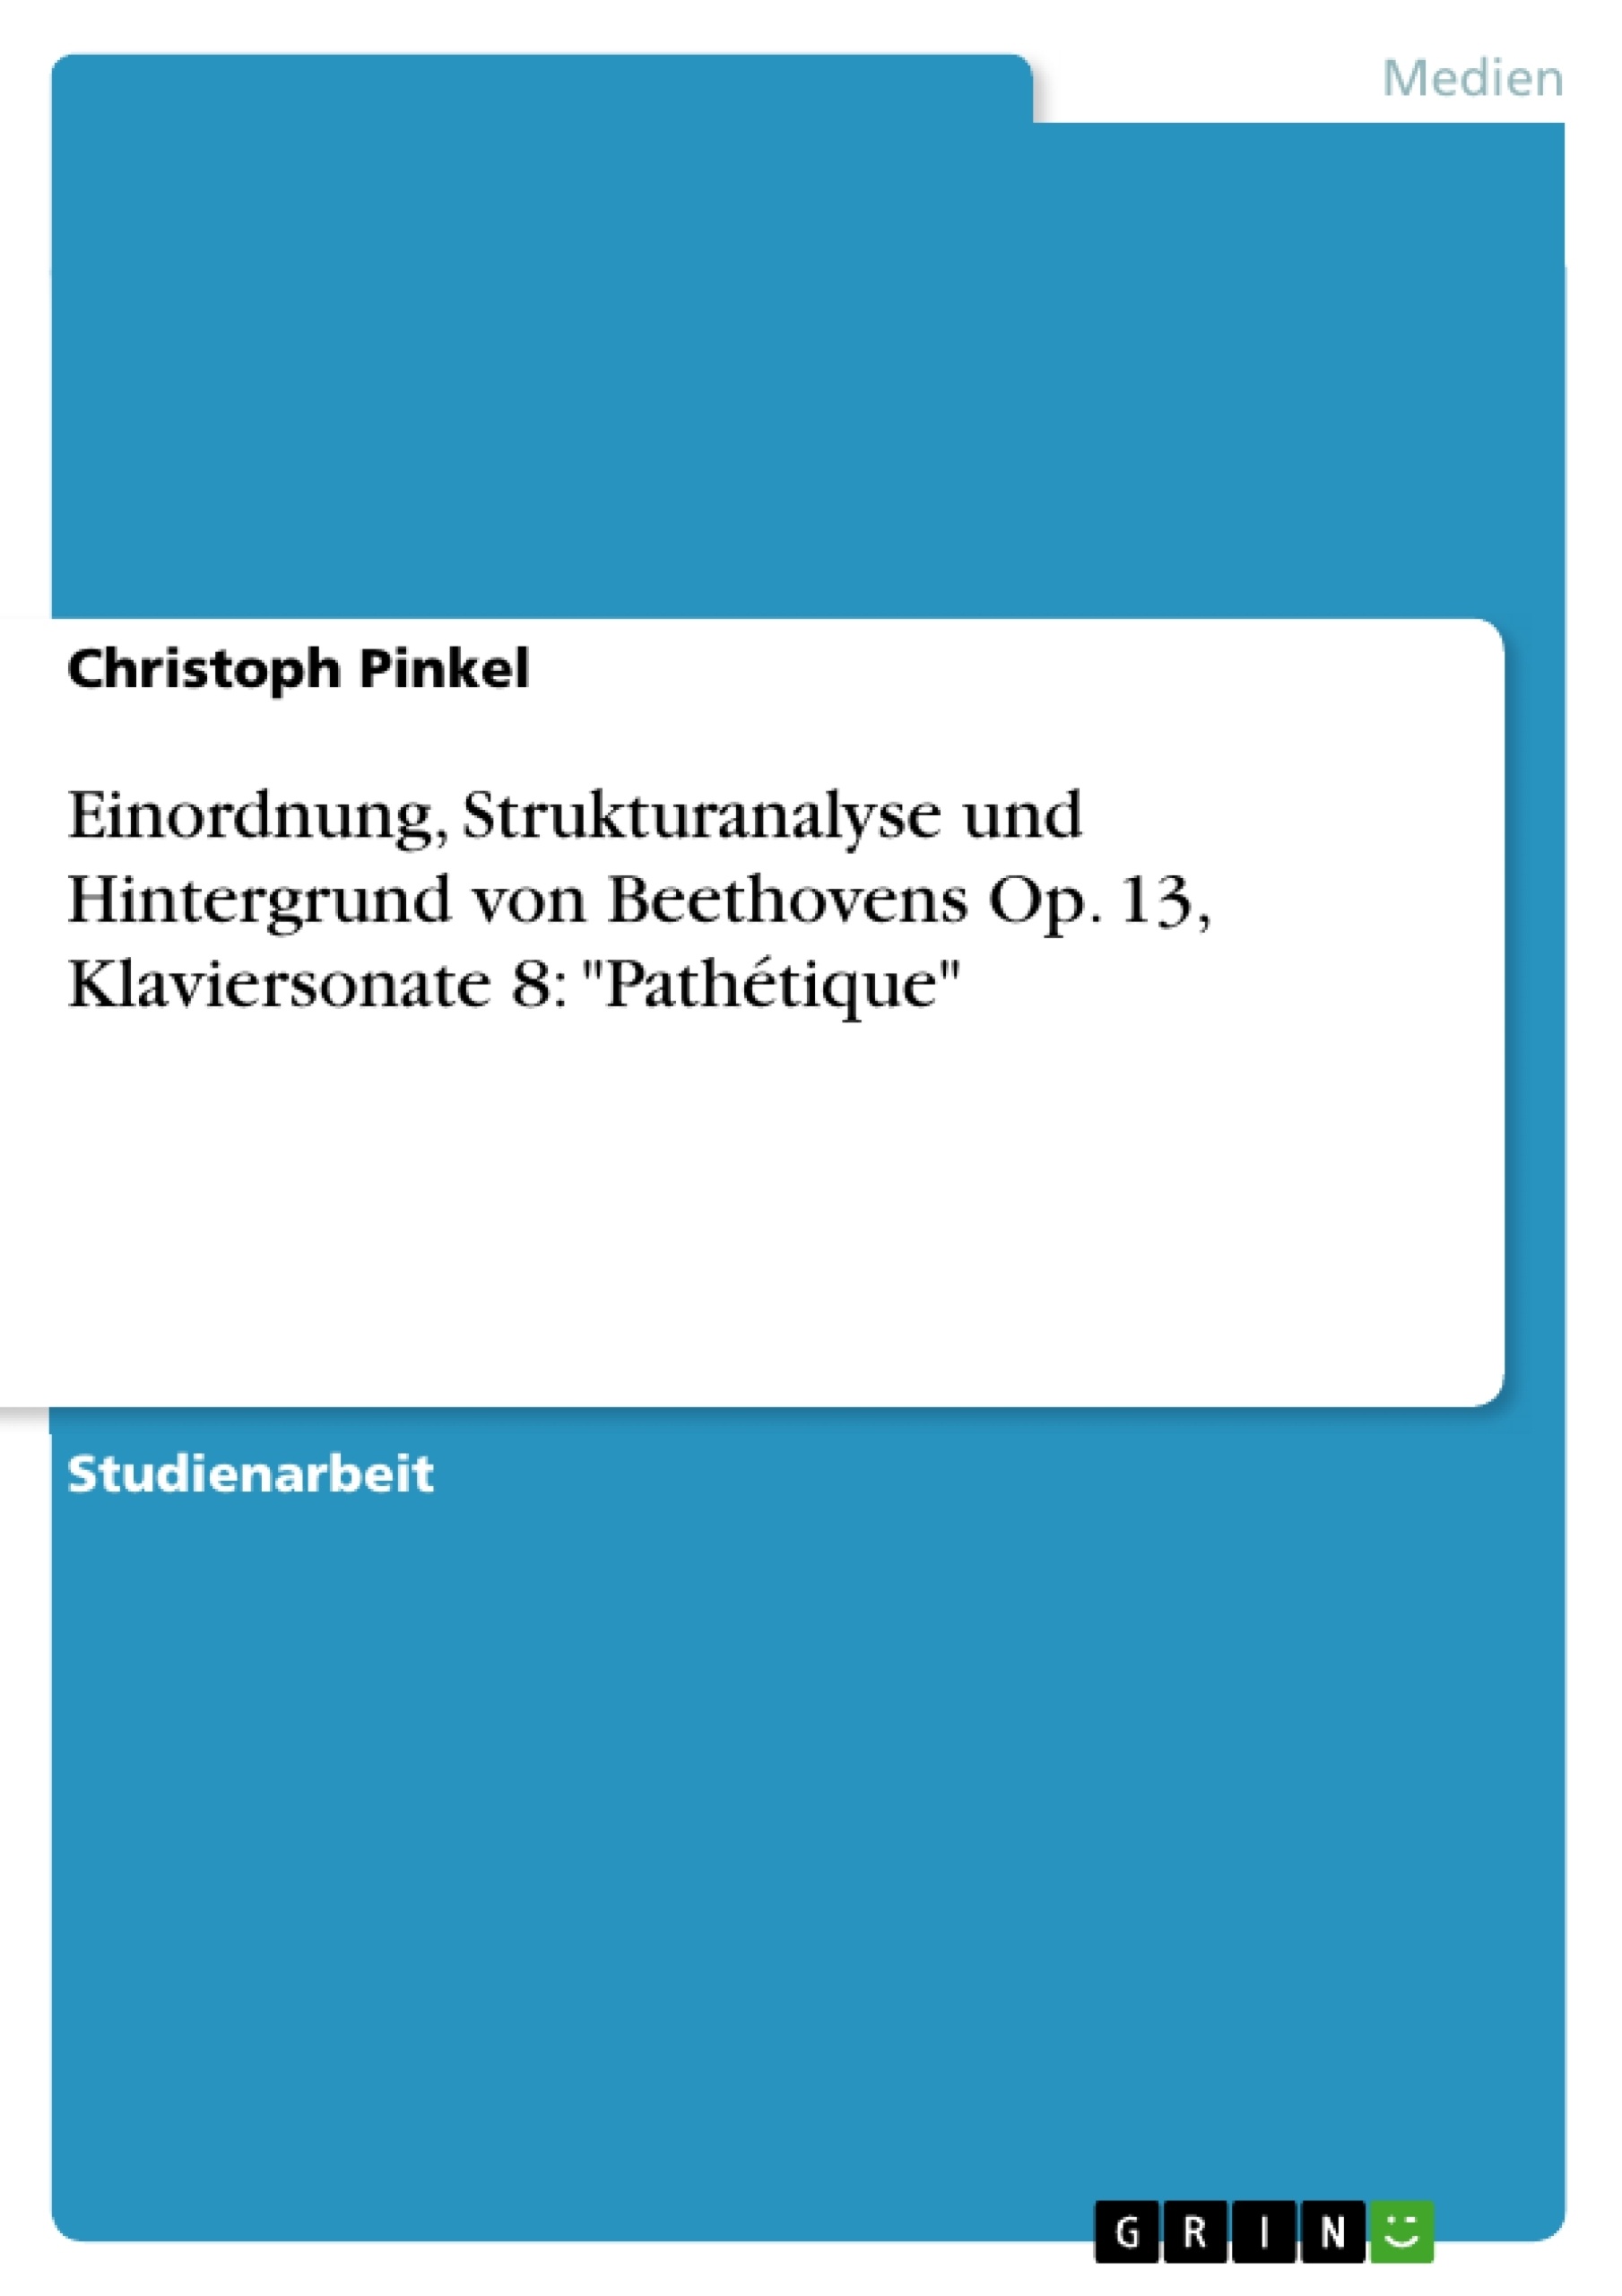 Titre: Einordnung, Strukturanalyse und Hintergrund von Beethovens Op. 13, Klaviersonate 8: "Pathétique"